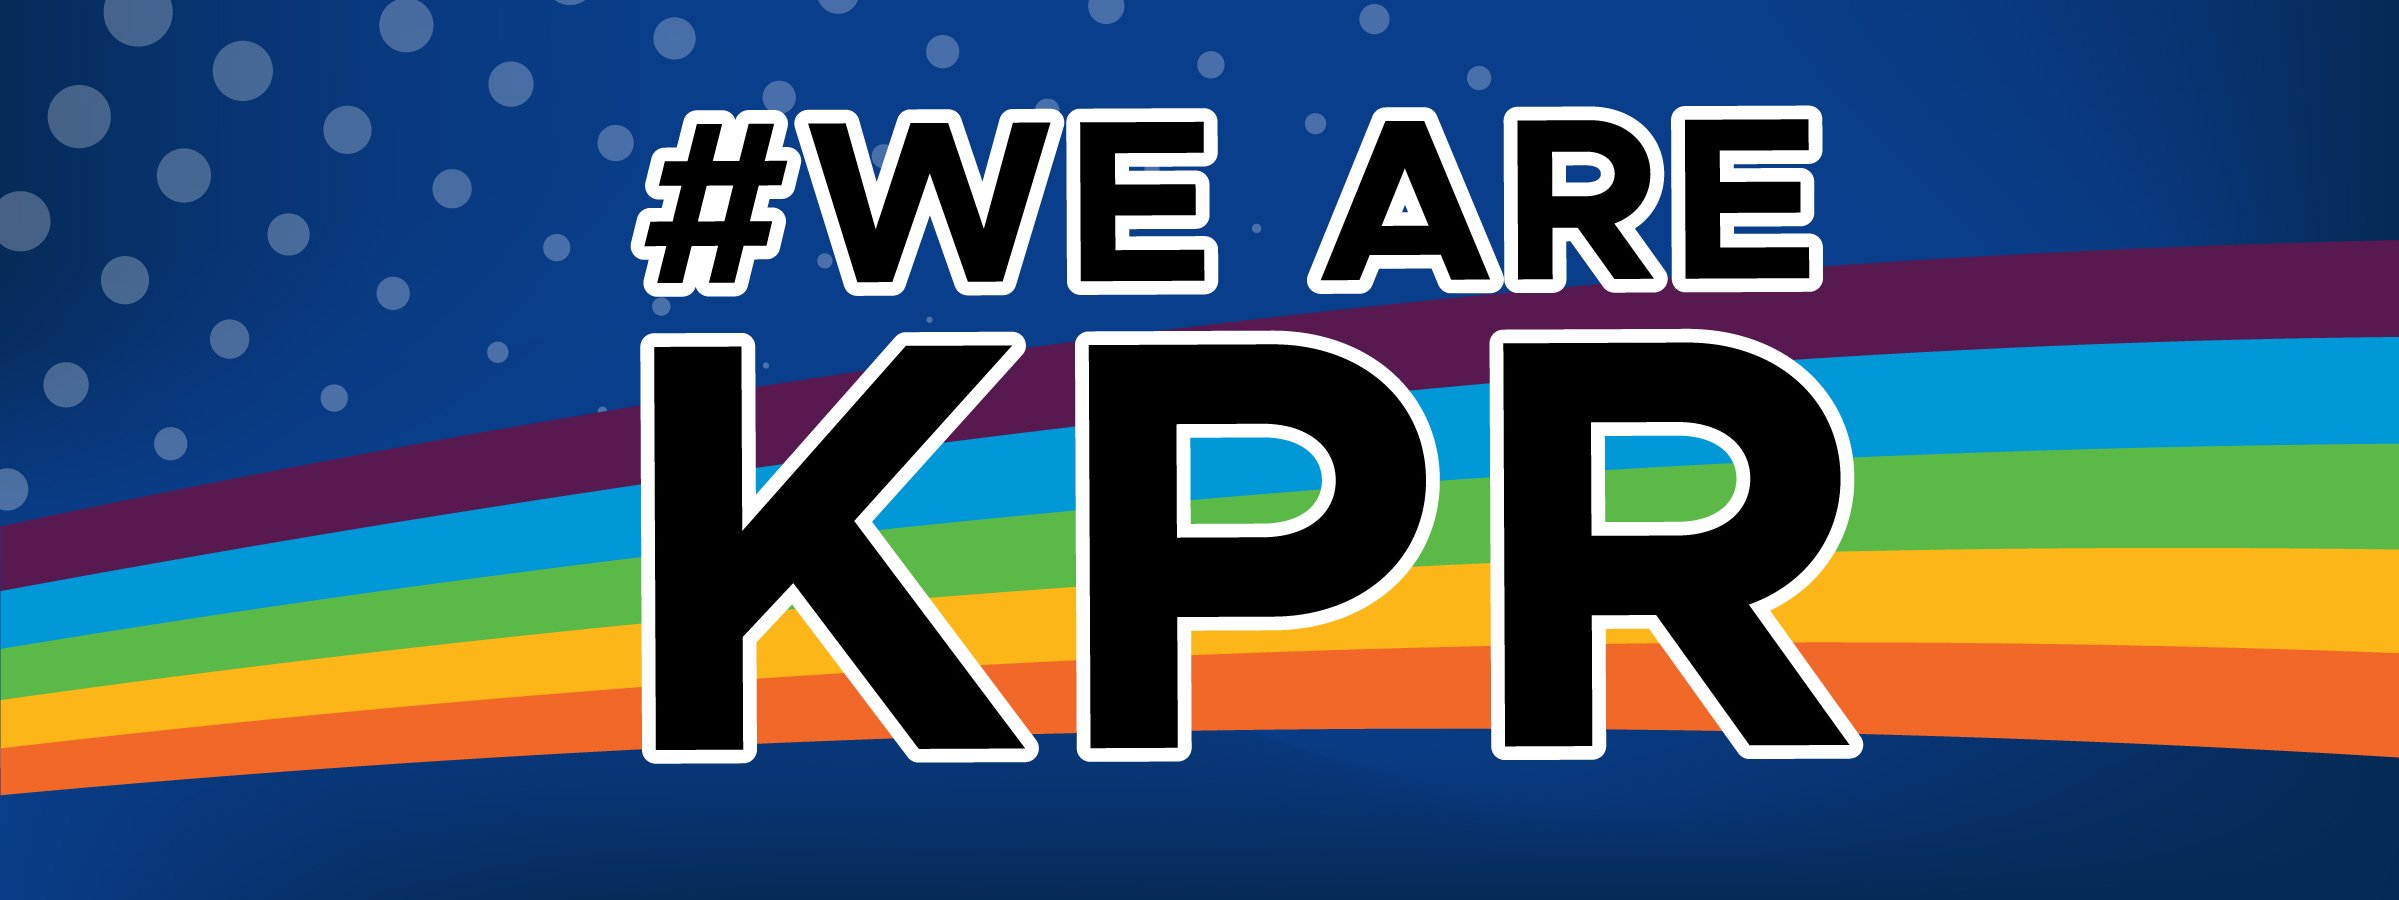 KPR swoosh with WeAreKPR in black letters, blue background